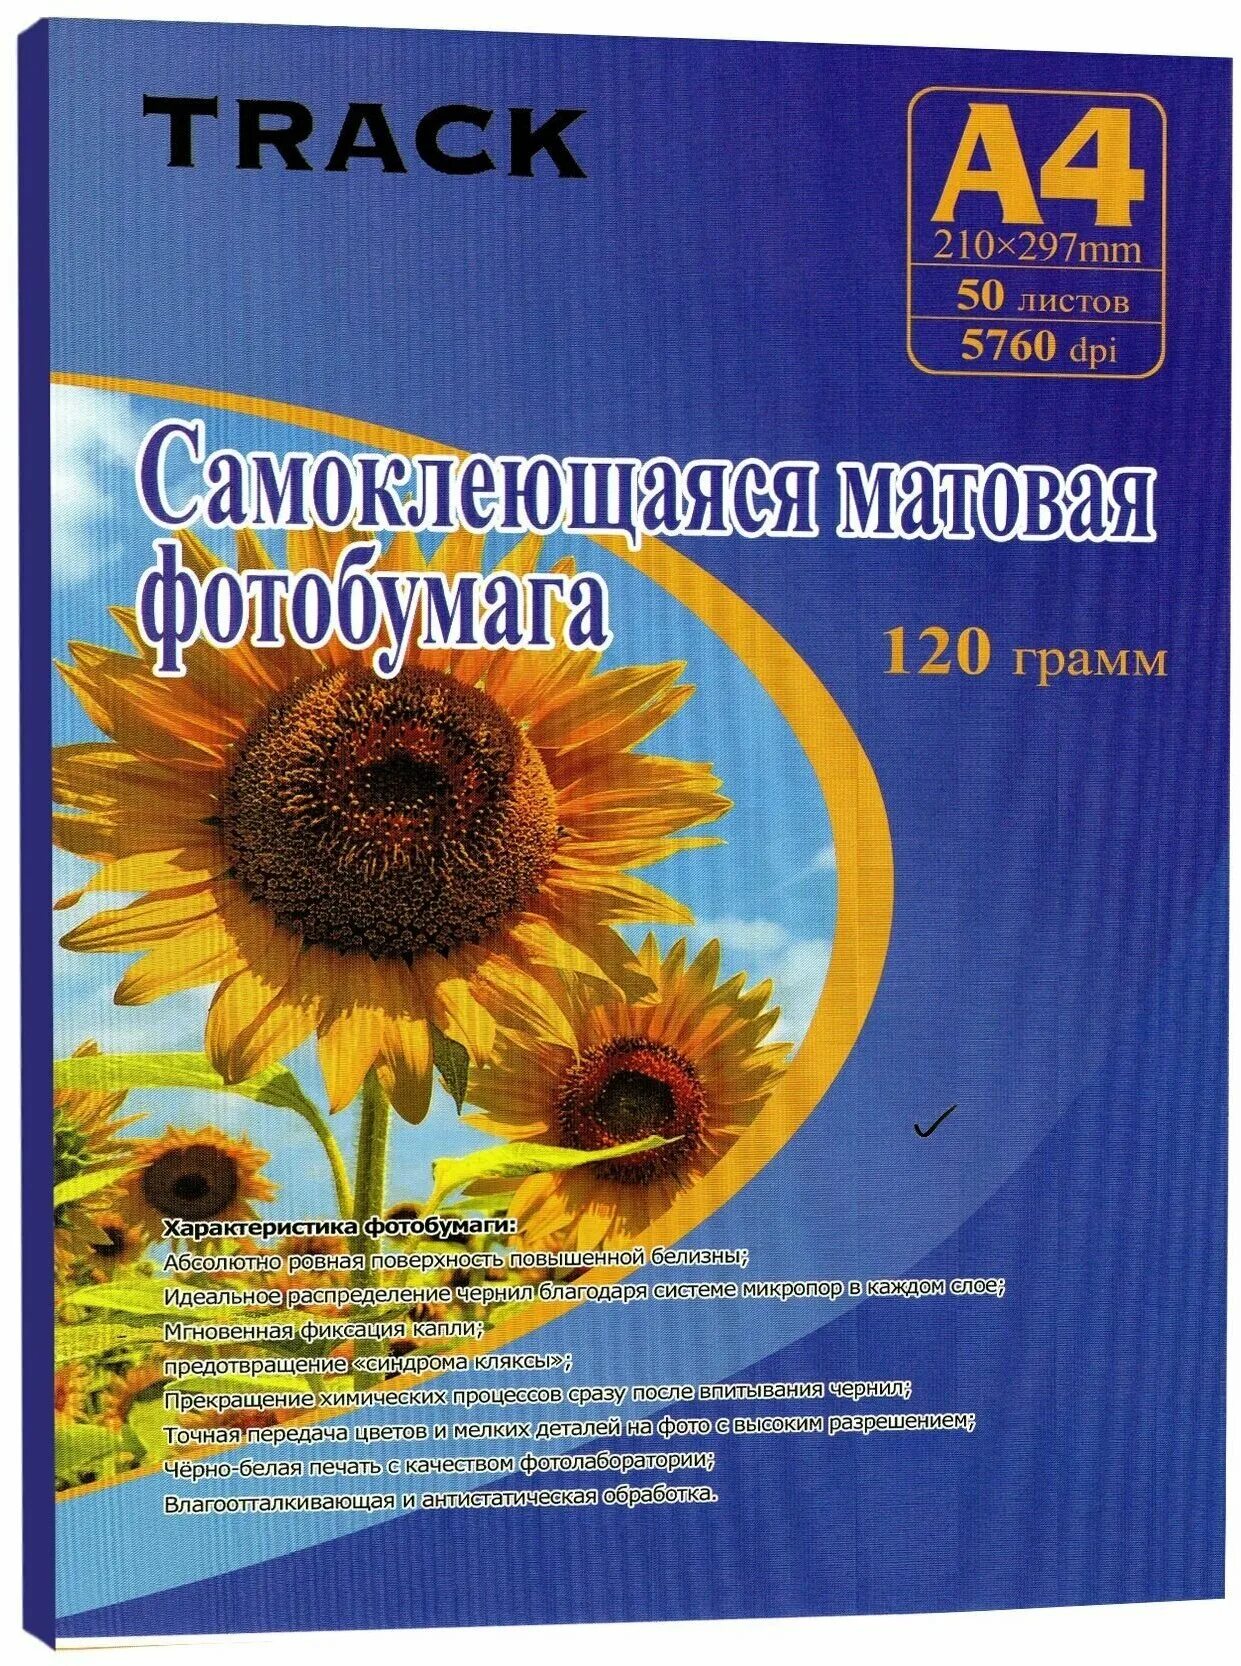 Фотобумага самоклеющаяся. Р3100 Солнечный цветок. Нутрибор удобрение. Методические рекомендации для фермеров. Текст Солнечный цветок.